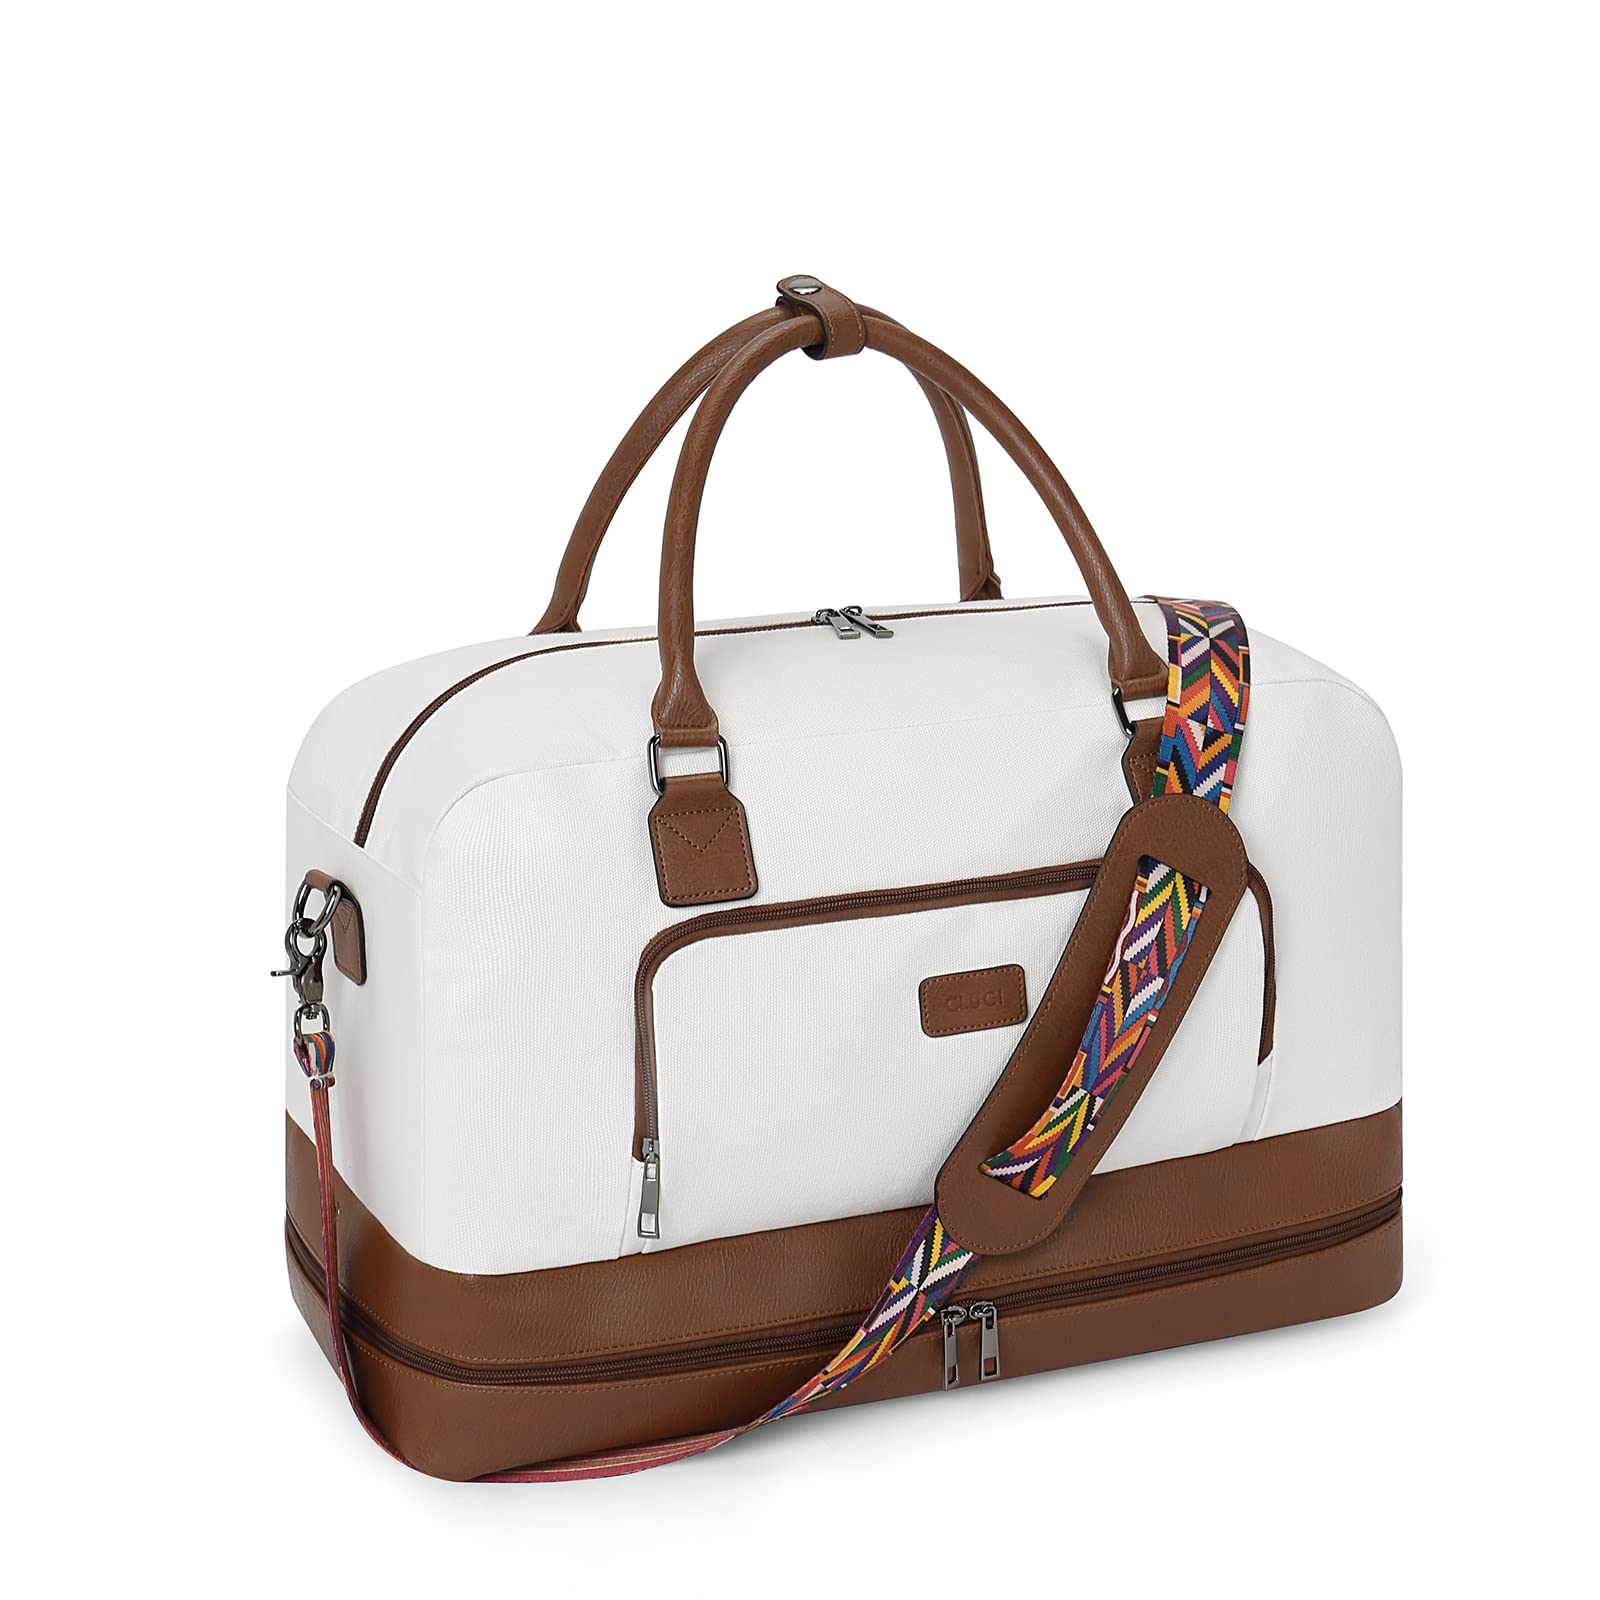 送料無料CLUCI Weekender Bags for Women Canvas Duffle Bag Travel Overnight Bags Carry On Tote with Shoe Compartment Beige